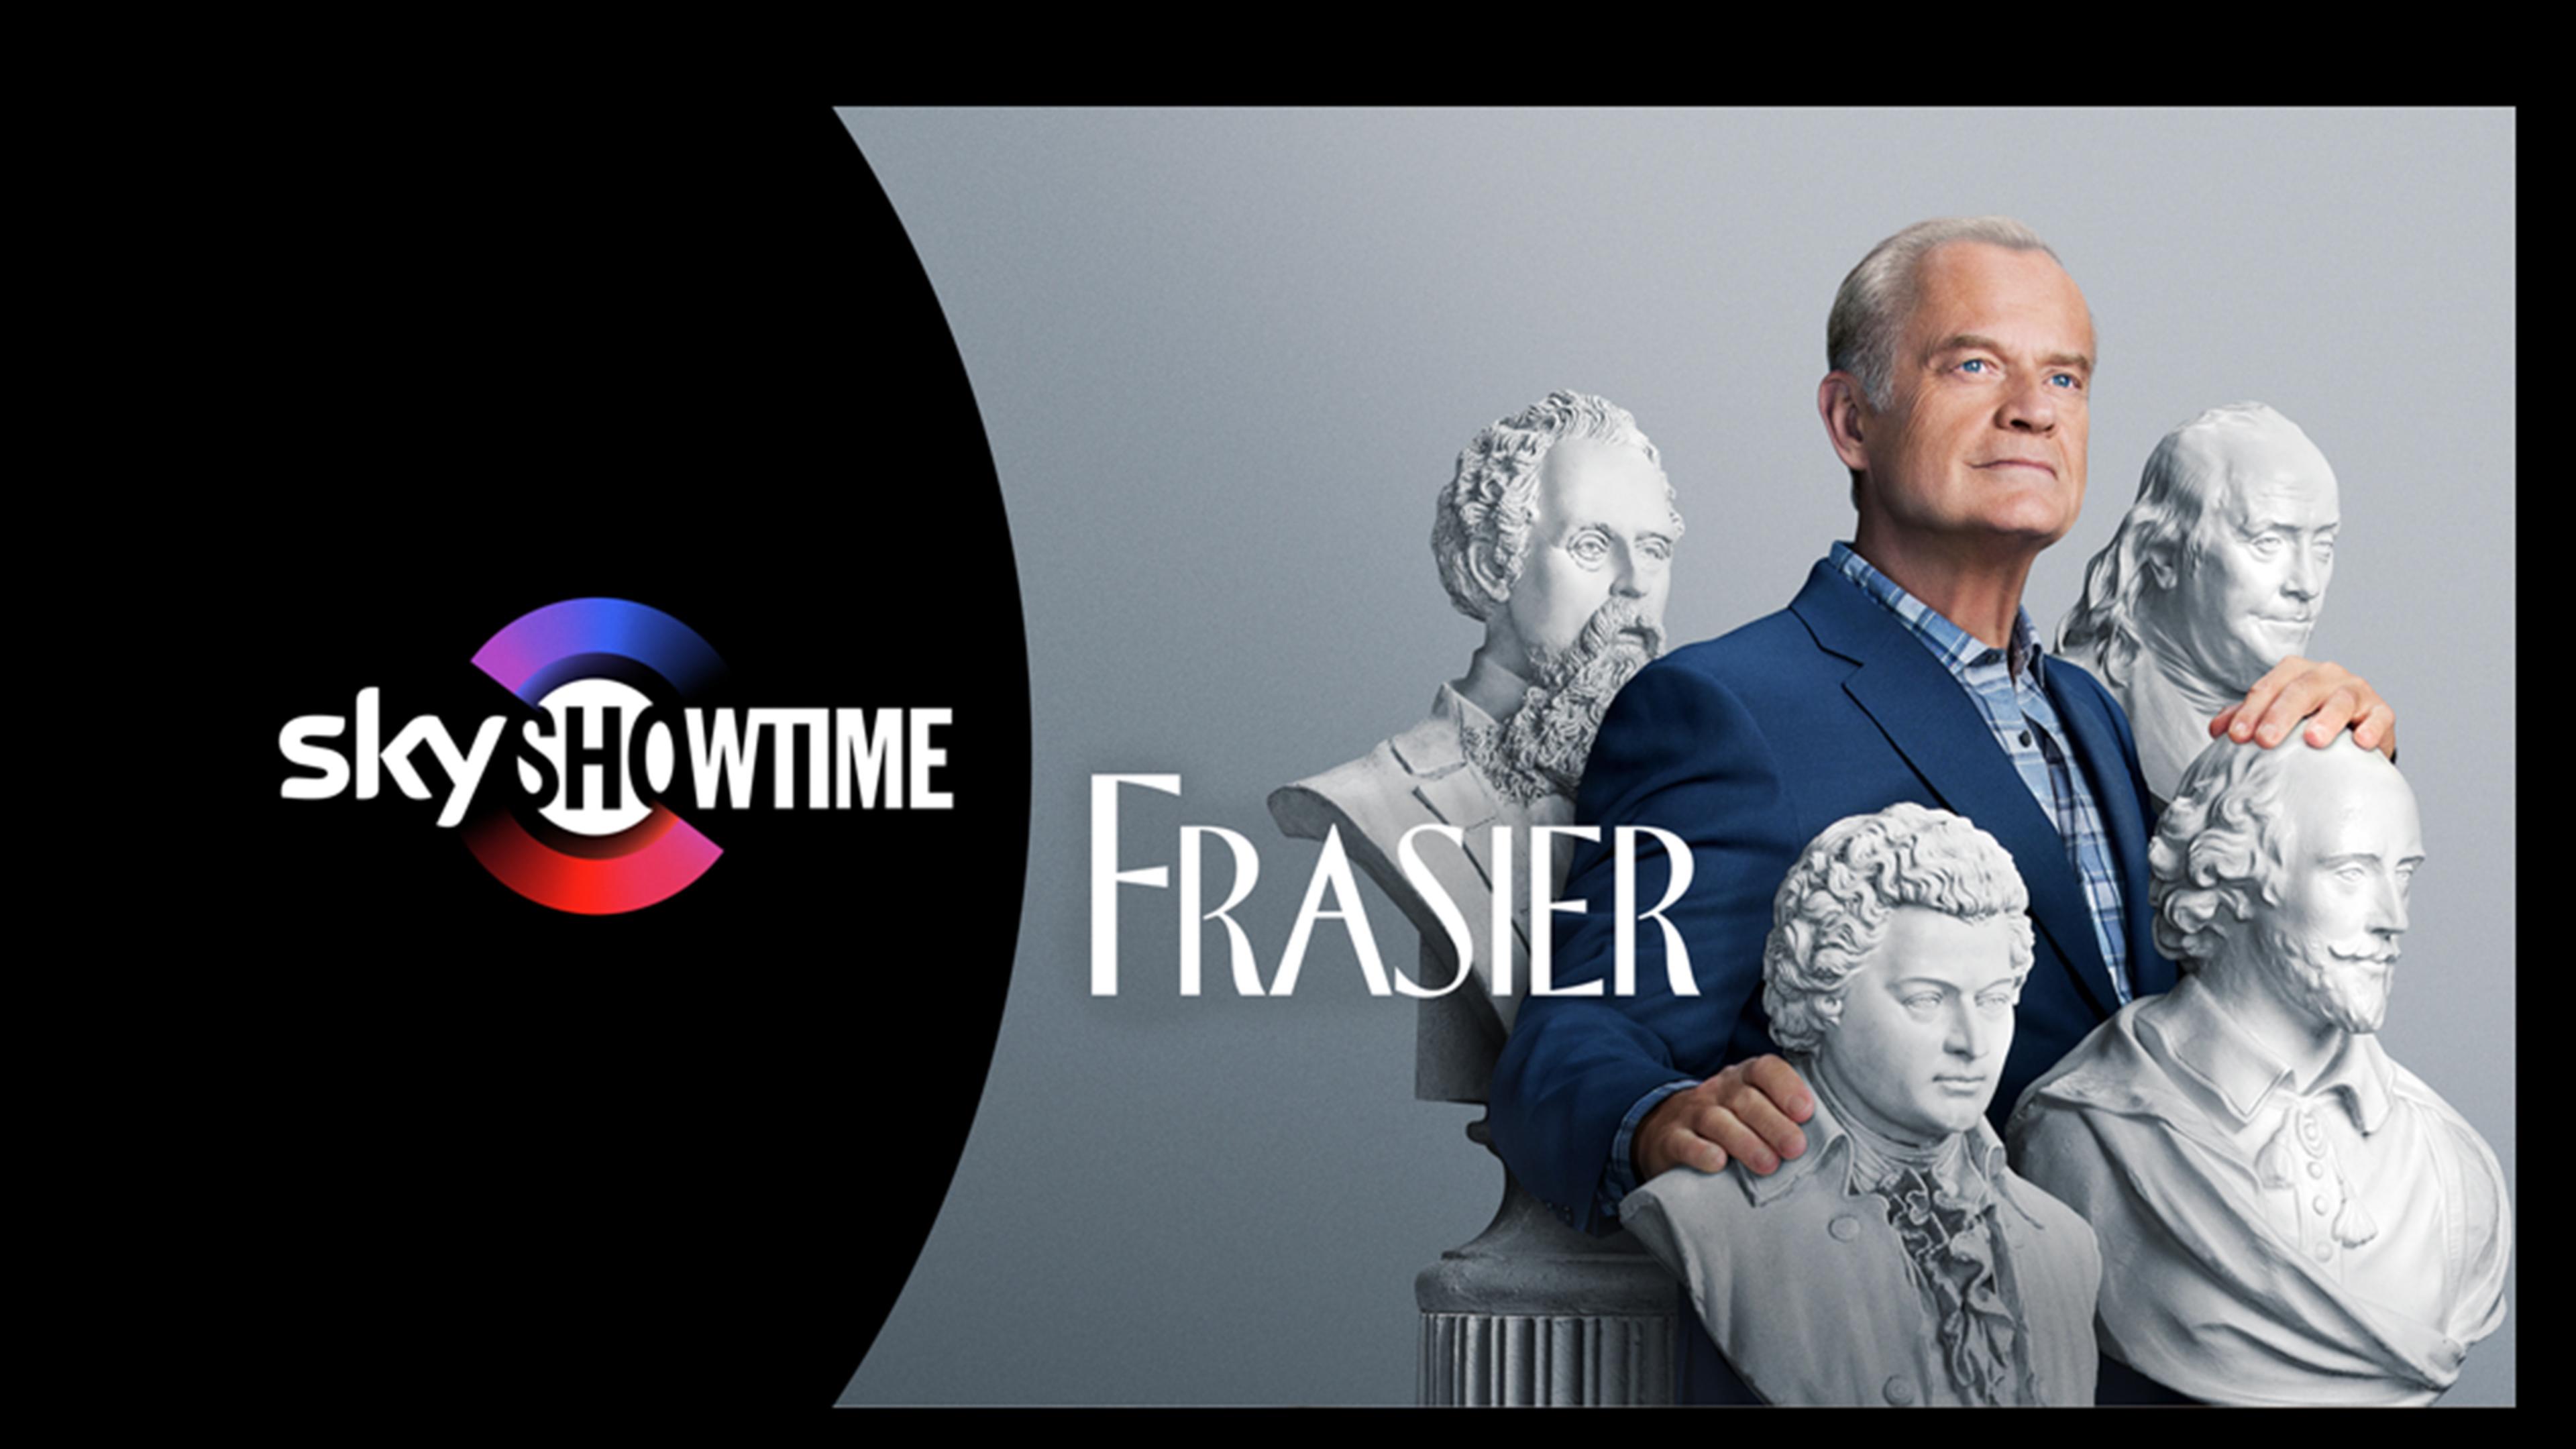 Frasier - en legend är tillbaka!  Frasier Crane (Kelsey Grammer) har återvänt till skärmen i en helt ny revival-serie! Se den på SkyShowtime. 